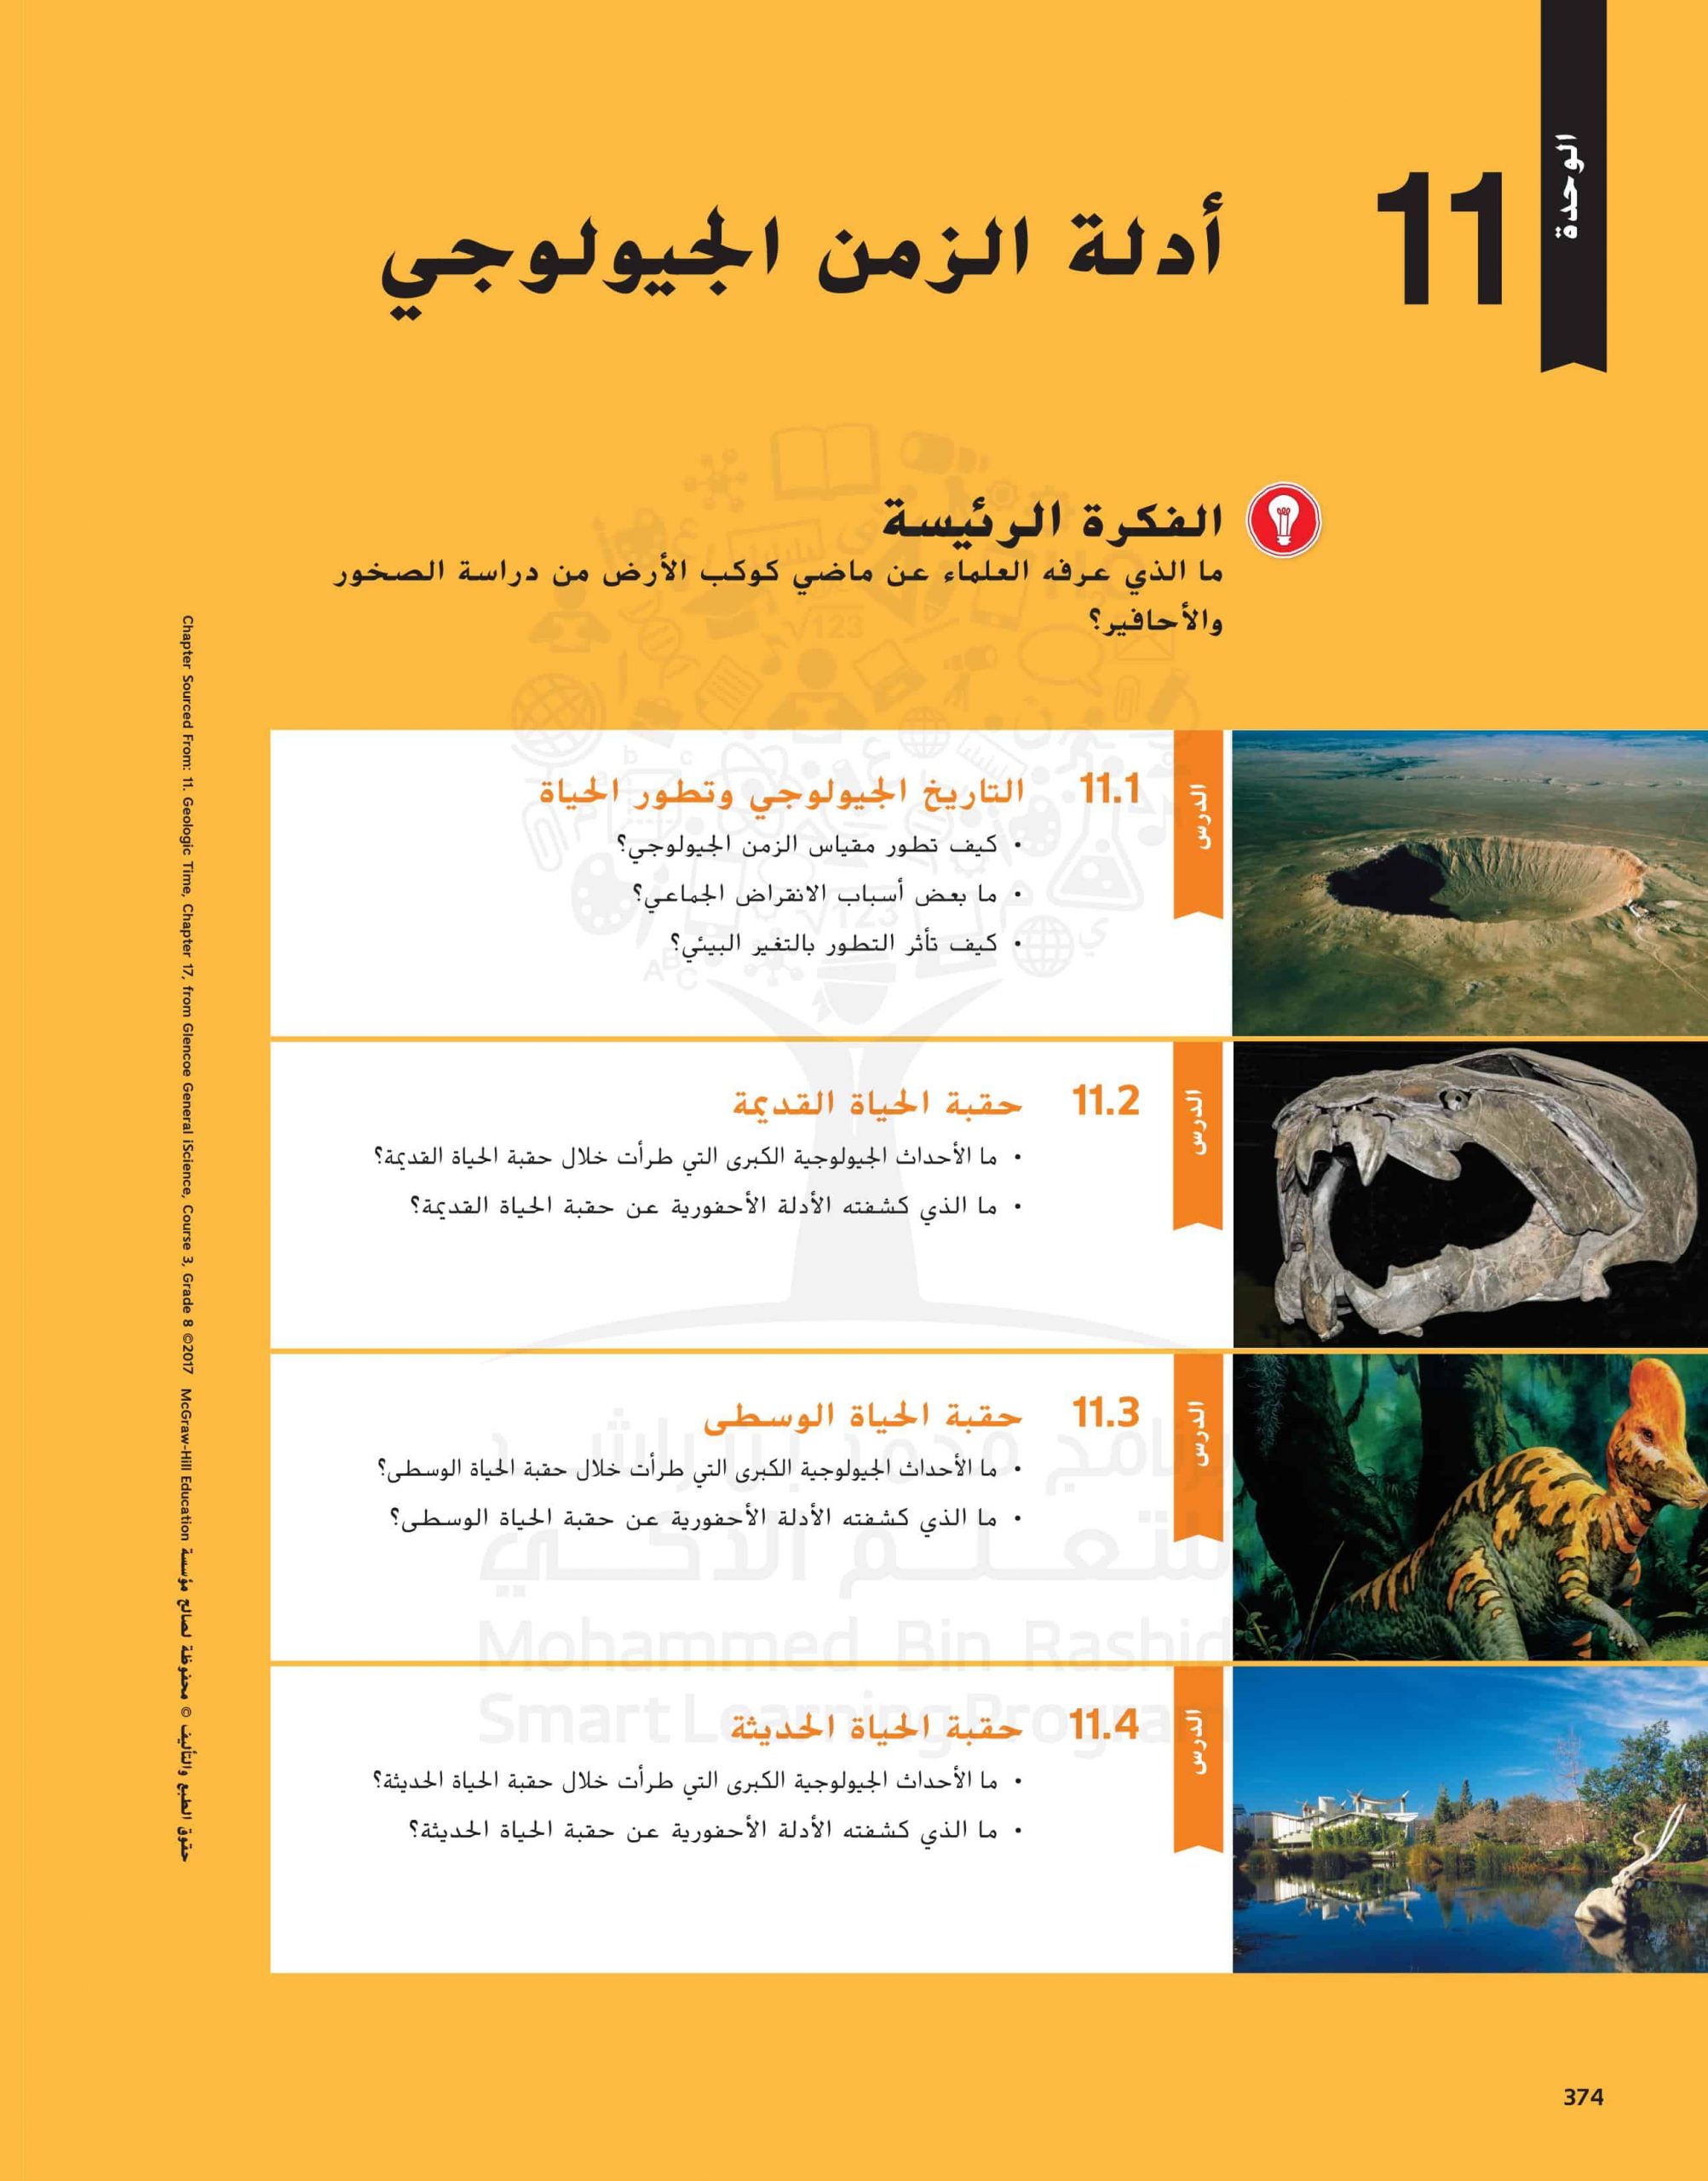 كتاب الطالب وحدة أدلة الزمن الجيولوجي الفصل الدراسي الثالث 2020-2021 الصف الثامن مادة العلوم المتكاملة 